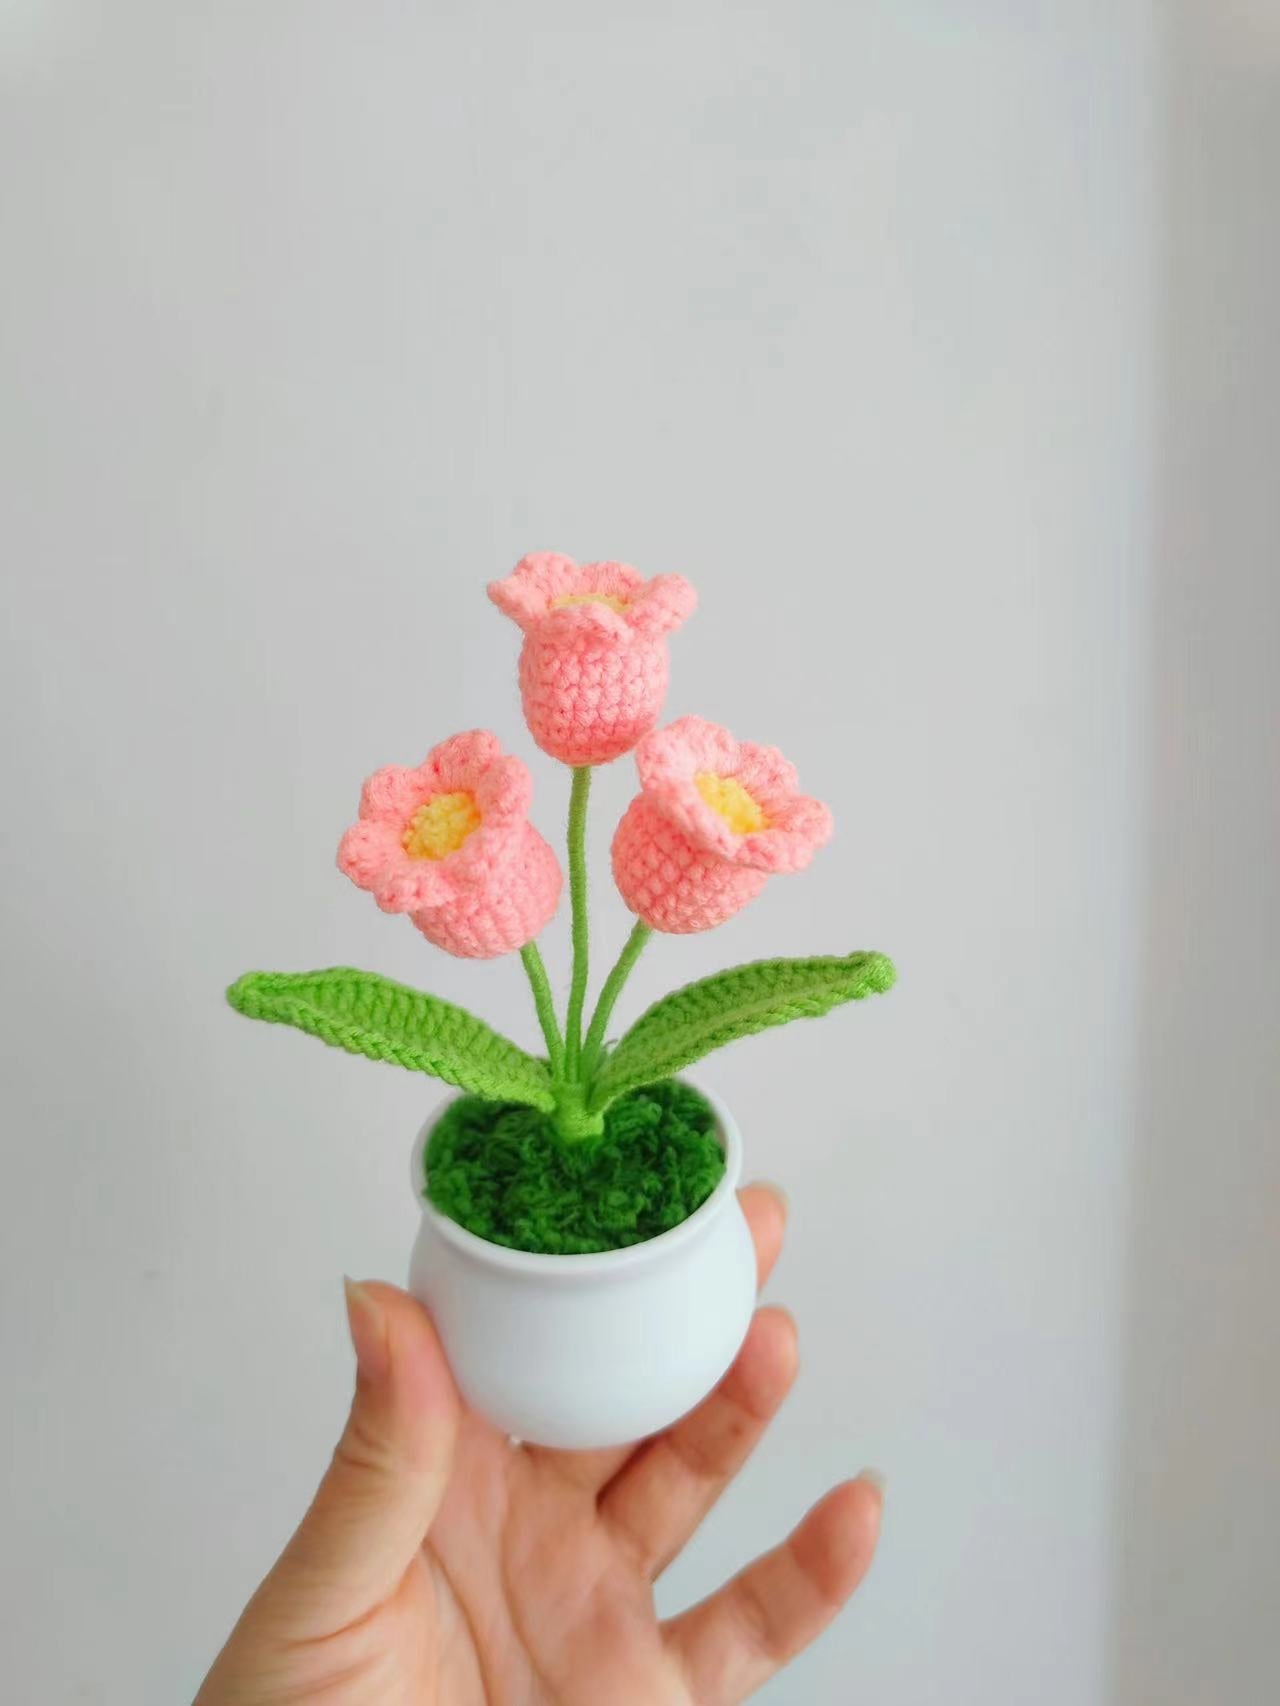 Artisanal Crocheted Flower Pot Display